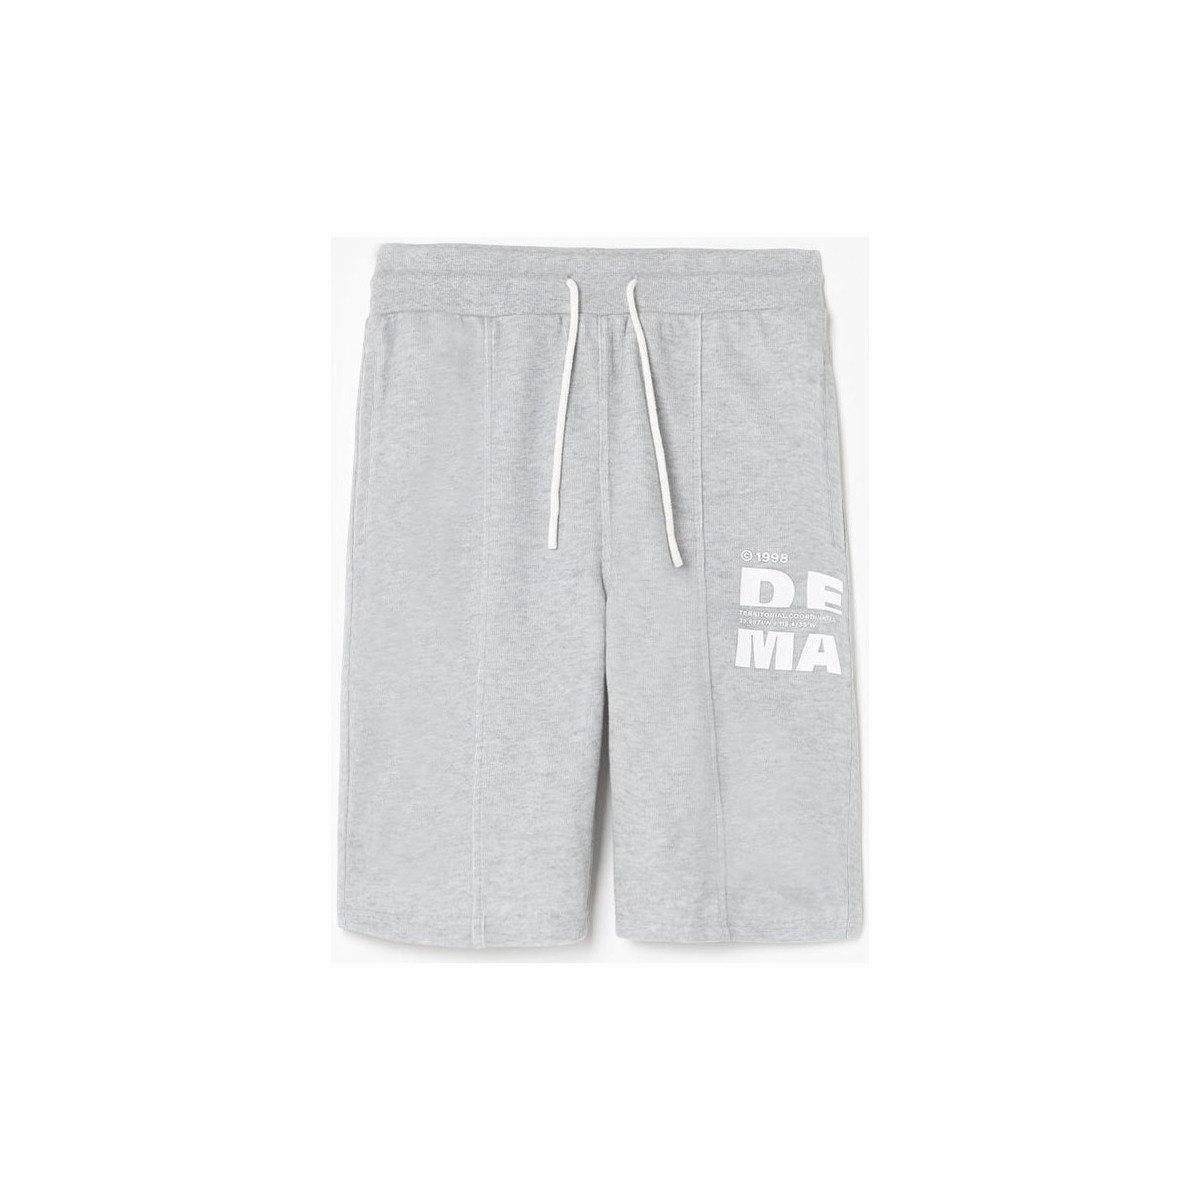 Kleidung Jungen Shorts / Bermudas Le Temps des Cerises Shorts DOLINBO Grau